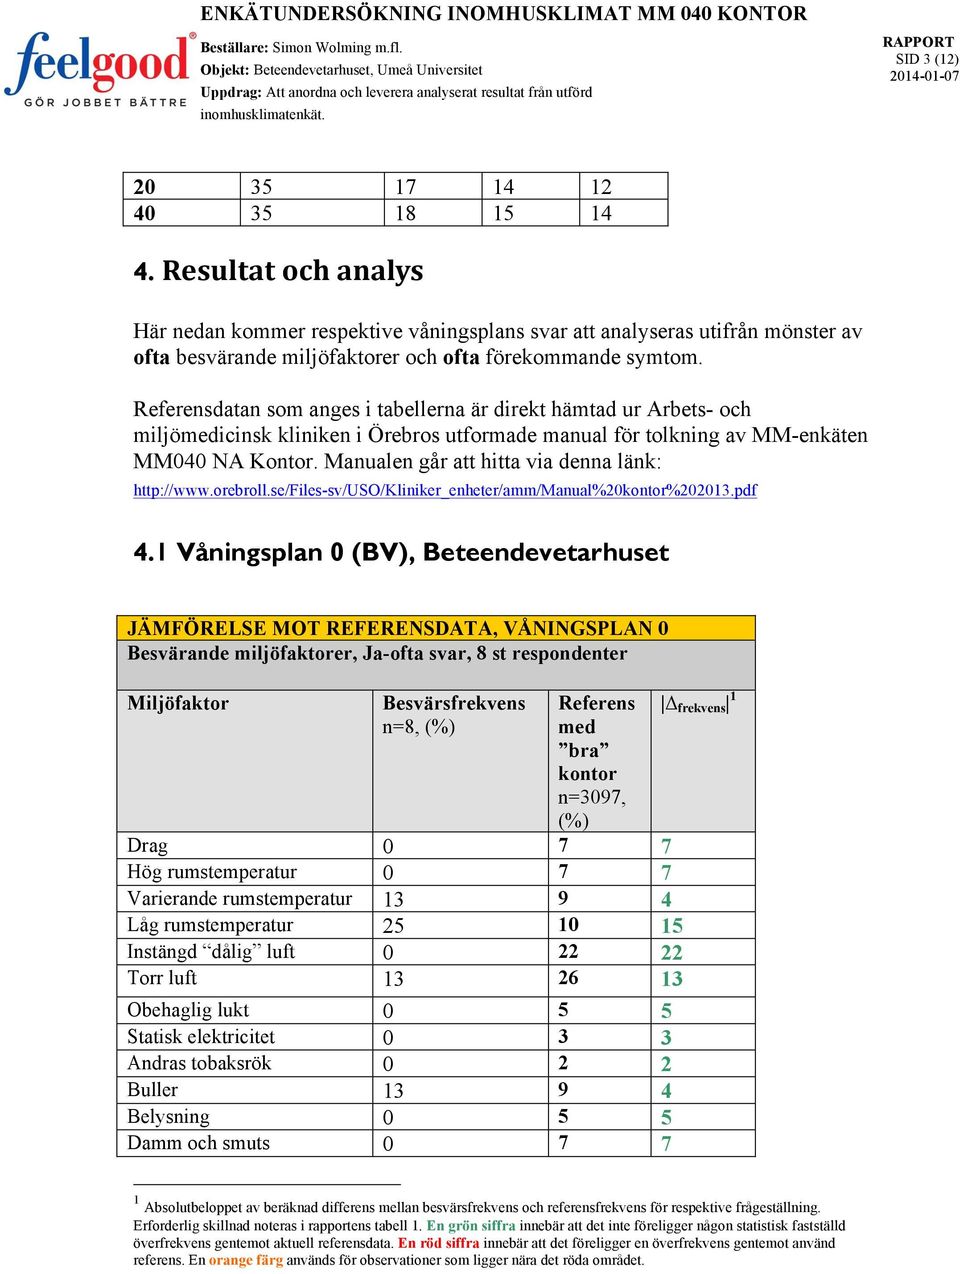 datan som anges i tabellerna är direkt hämtad ur Arbets- och miljöicinsk kliniken i Örebros utformade manual för tolkning av MM-enkäten MM040 NA Kontor.